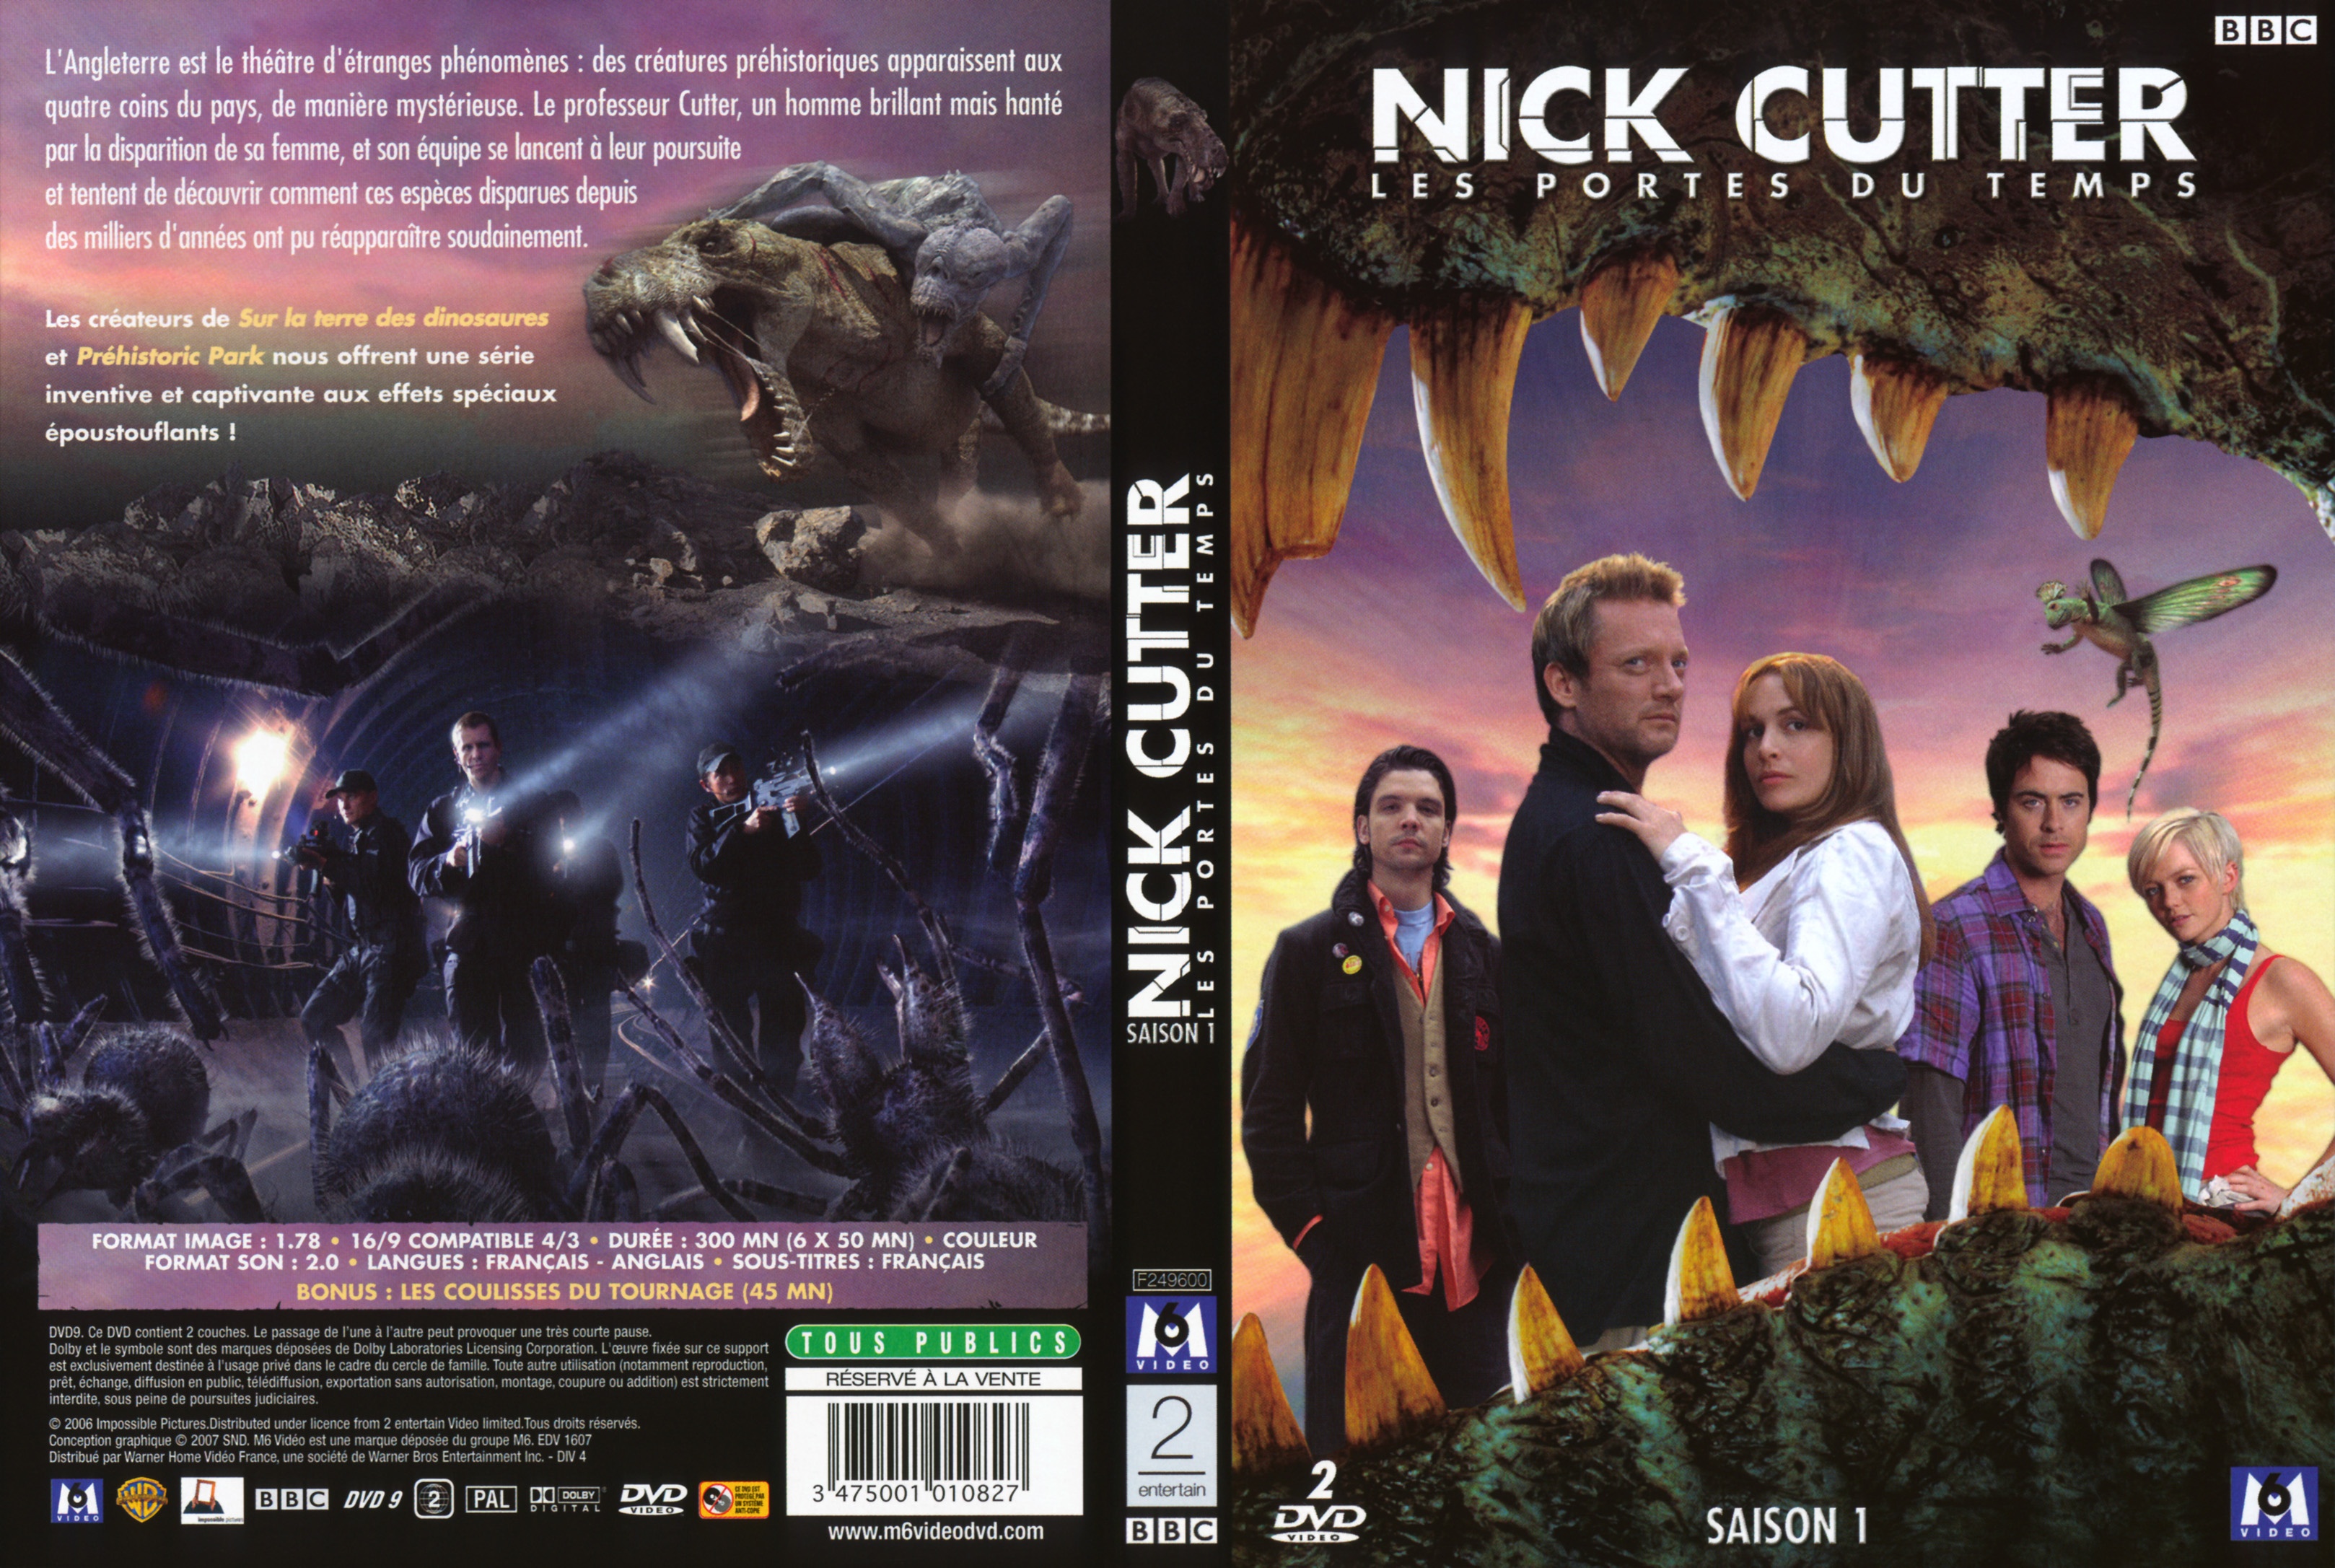 Jaquette DVD Nick Cutter Les portes du temps Saison 1